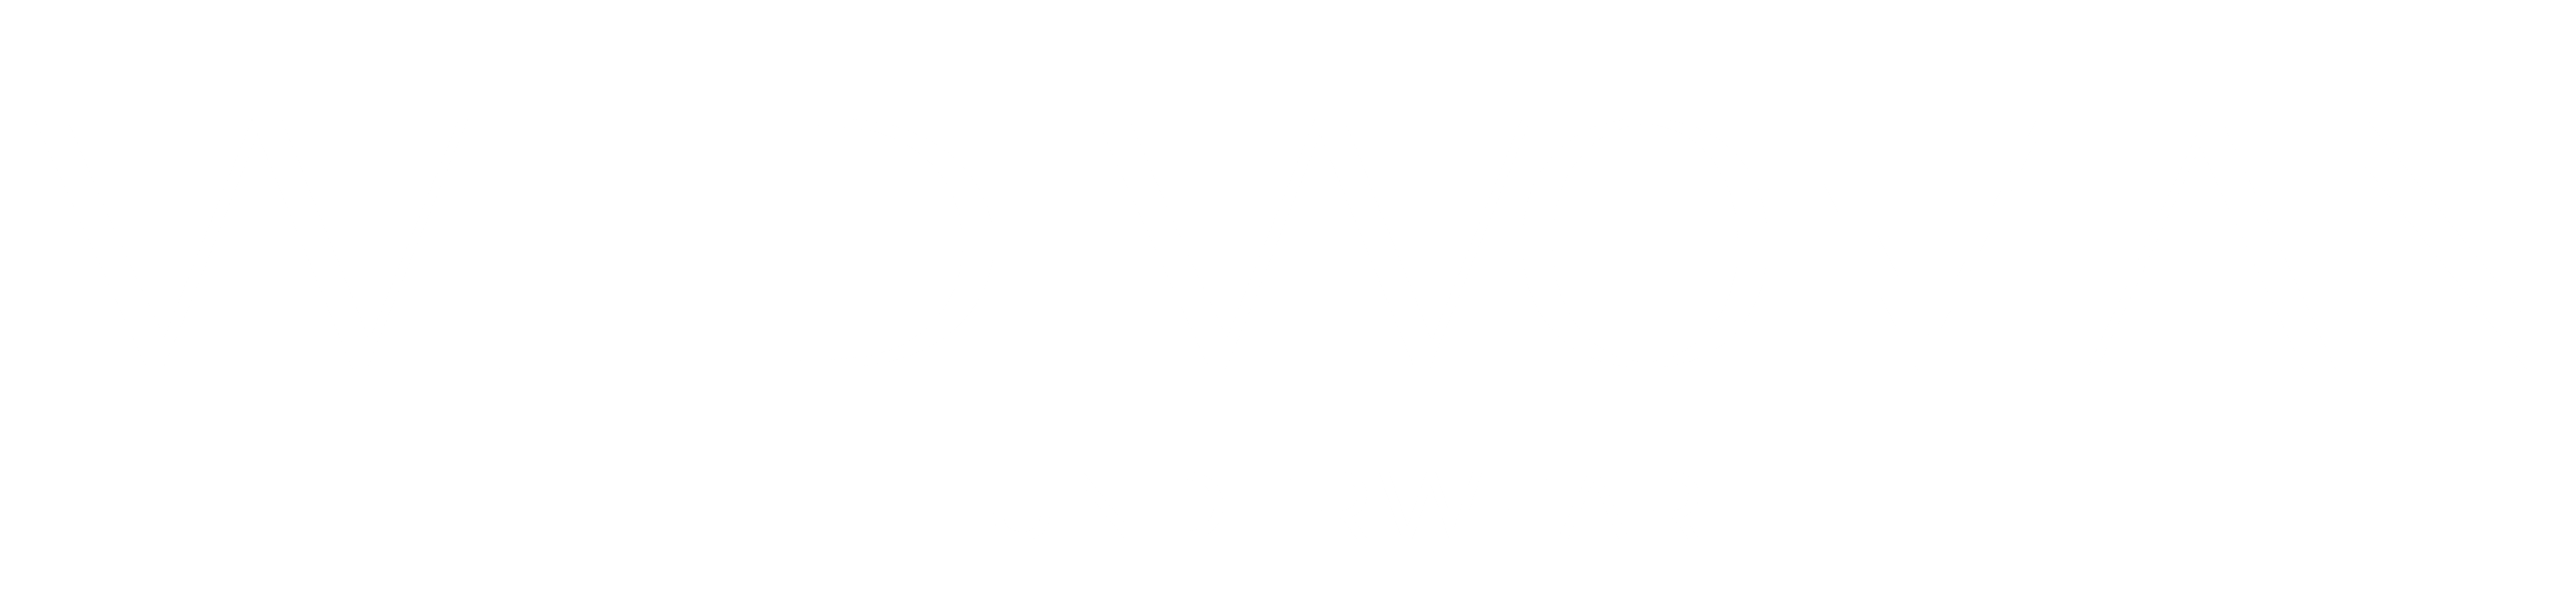 wild woman underwear